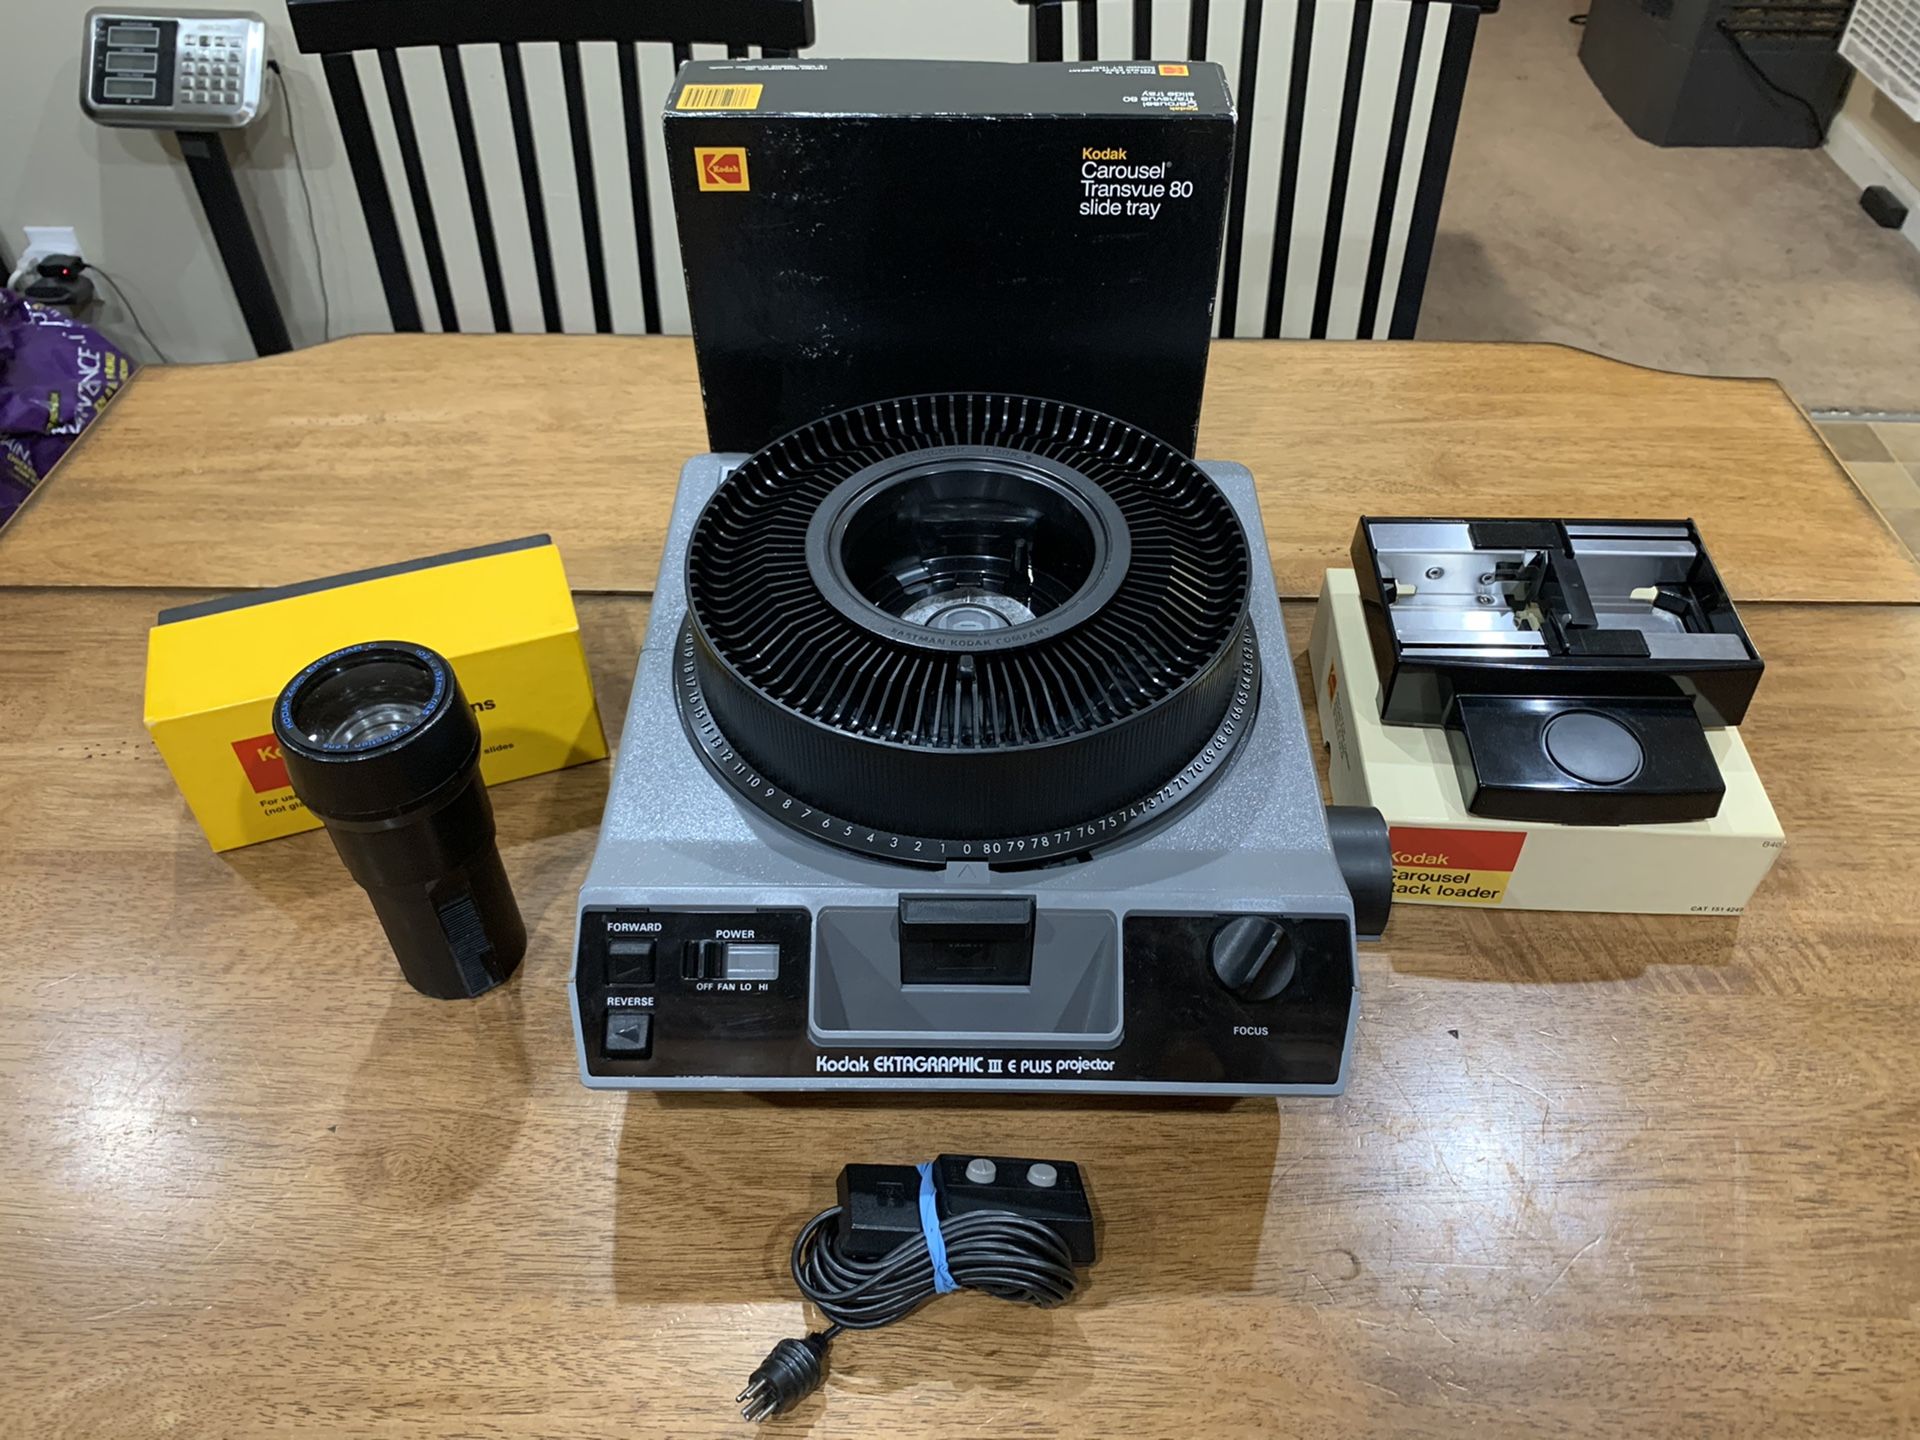 Kodak Ektagraphic III E Plus Projector w/ Ektanar 4-6”f/3.5 Slide Tray & Loader